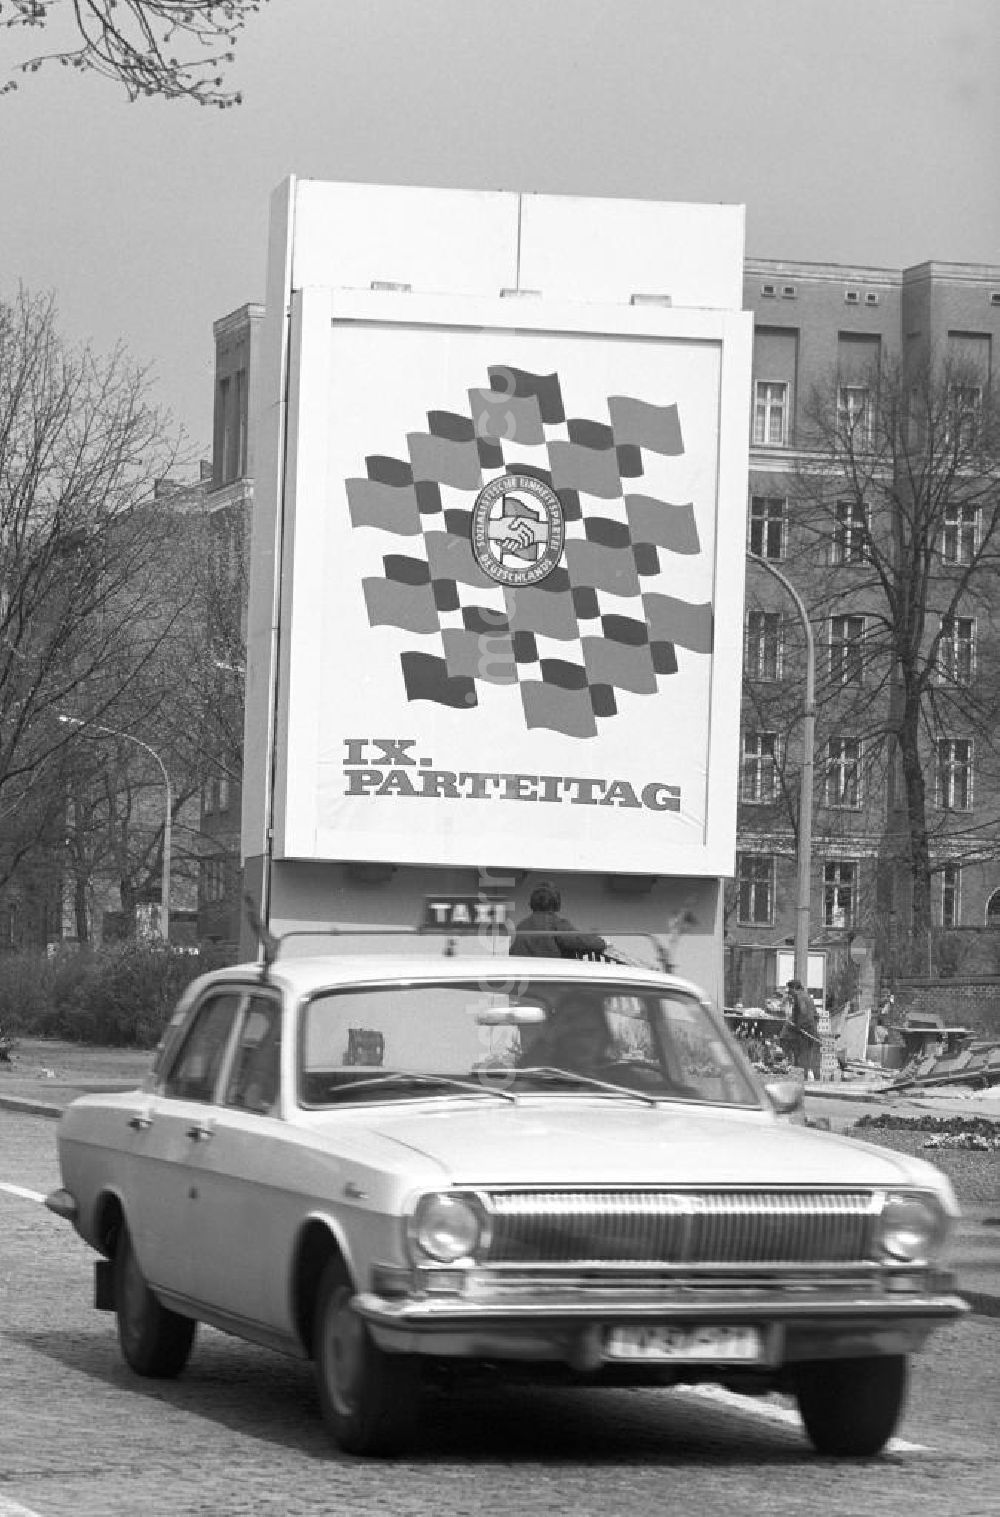 GDR photo archive: Berlin - Mit einer großen Schautafel - sogenannte Sichtwerbung - wird für den IX. Parteitag der Sozialistischen Einheitspartei Deutschlands (SED) in Berlin geworben.